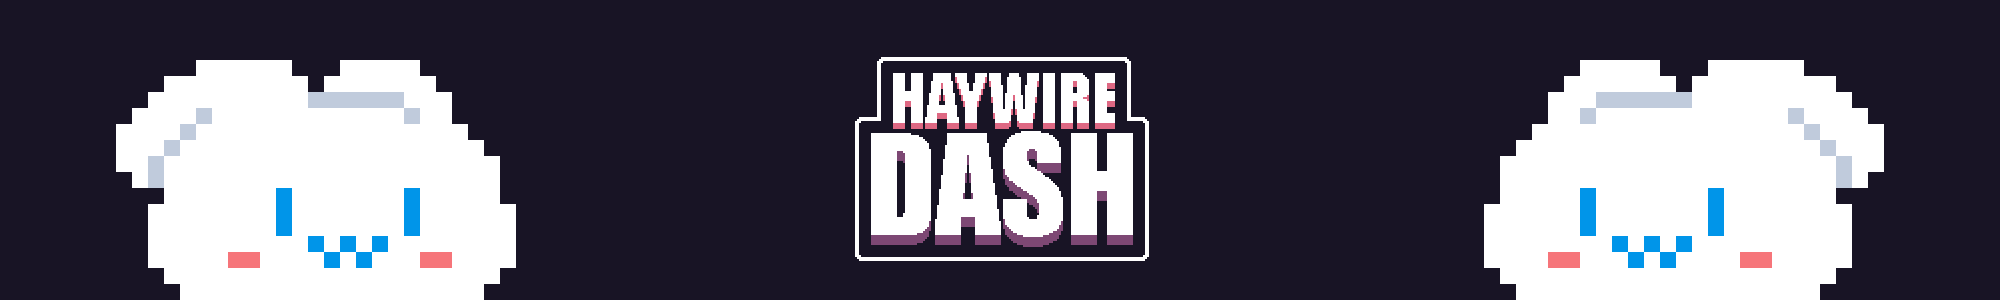 Haywire  Dash